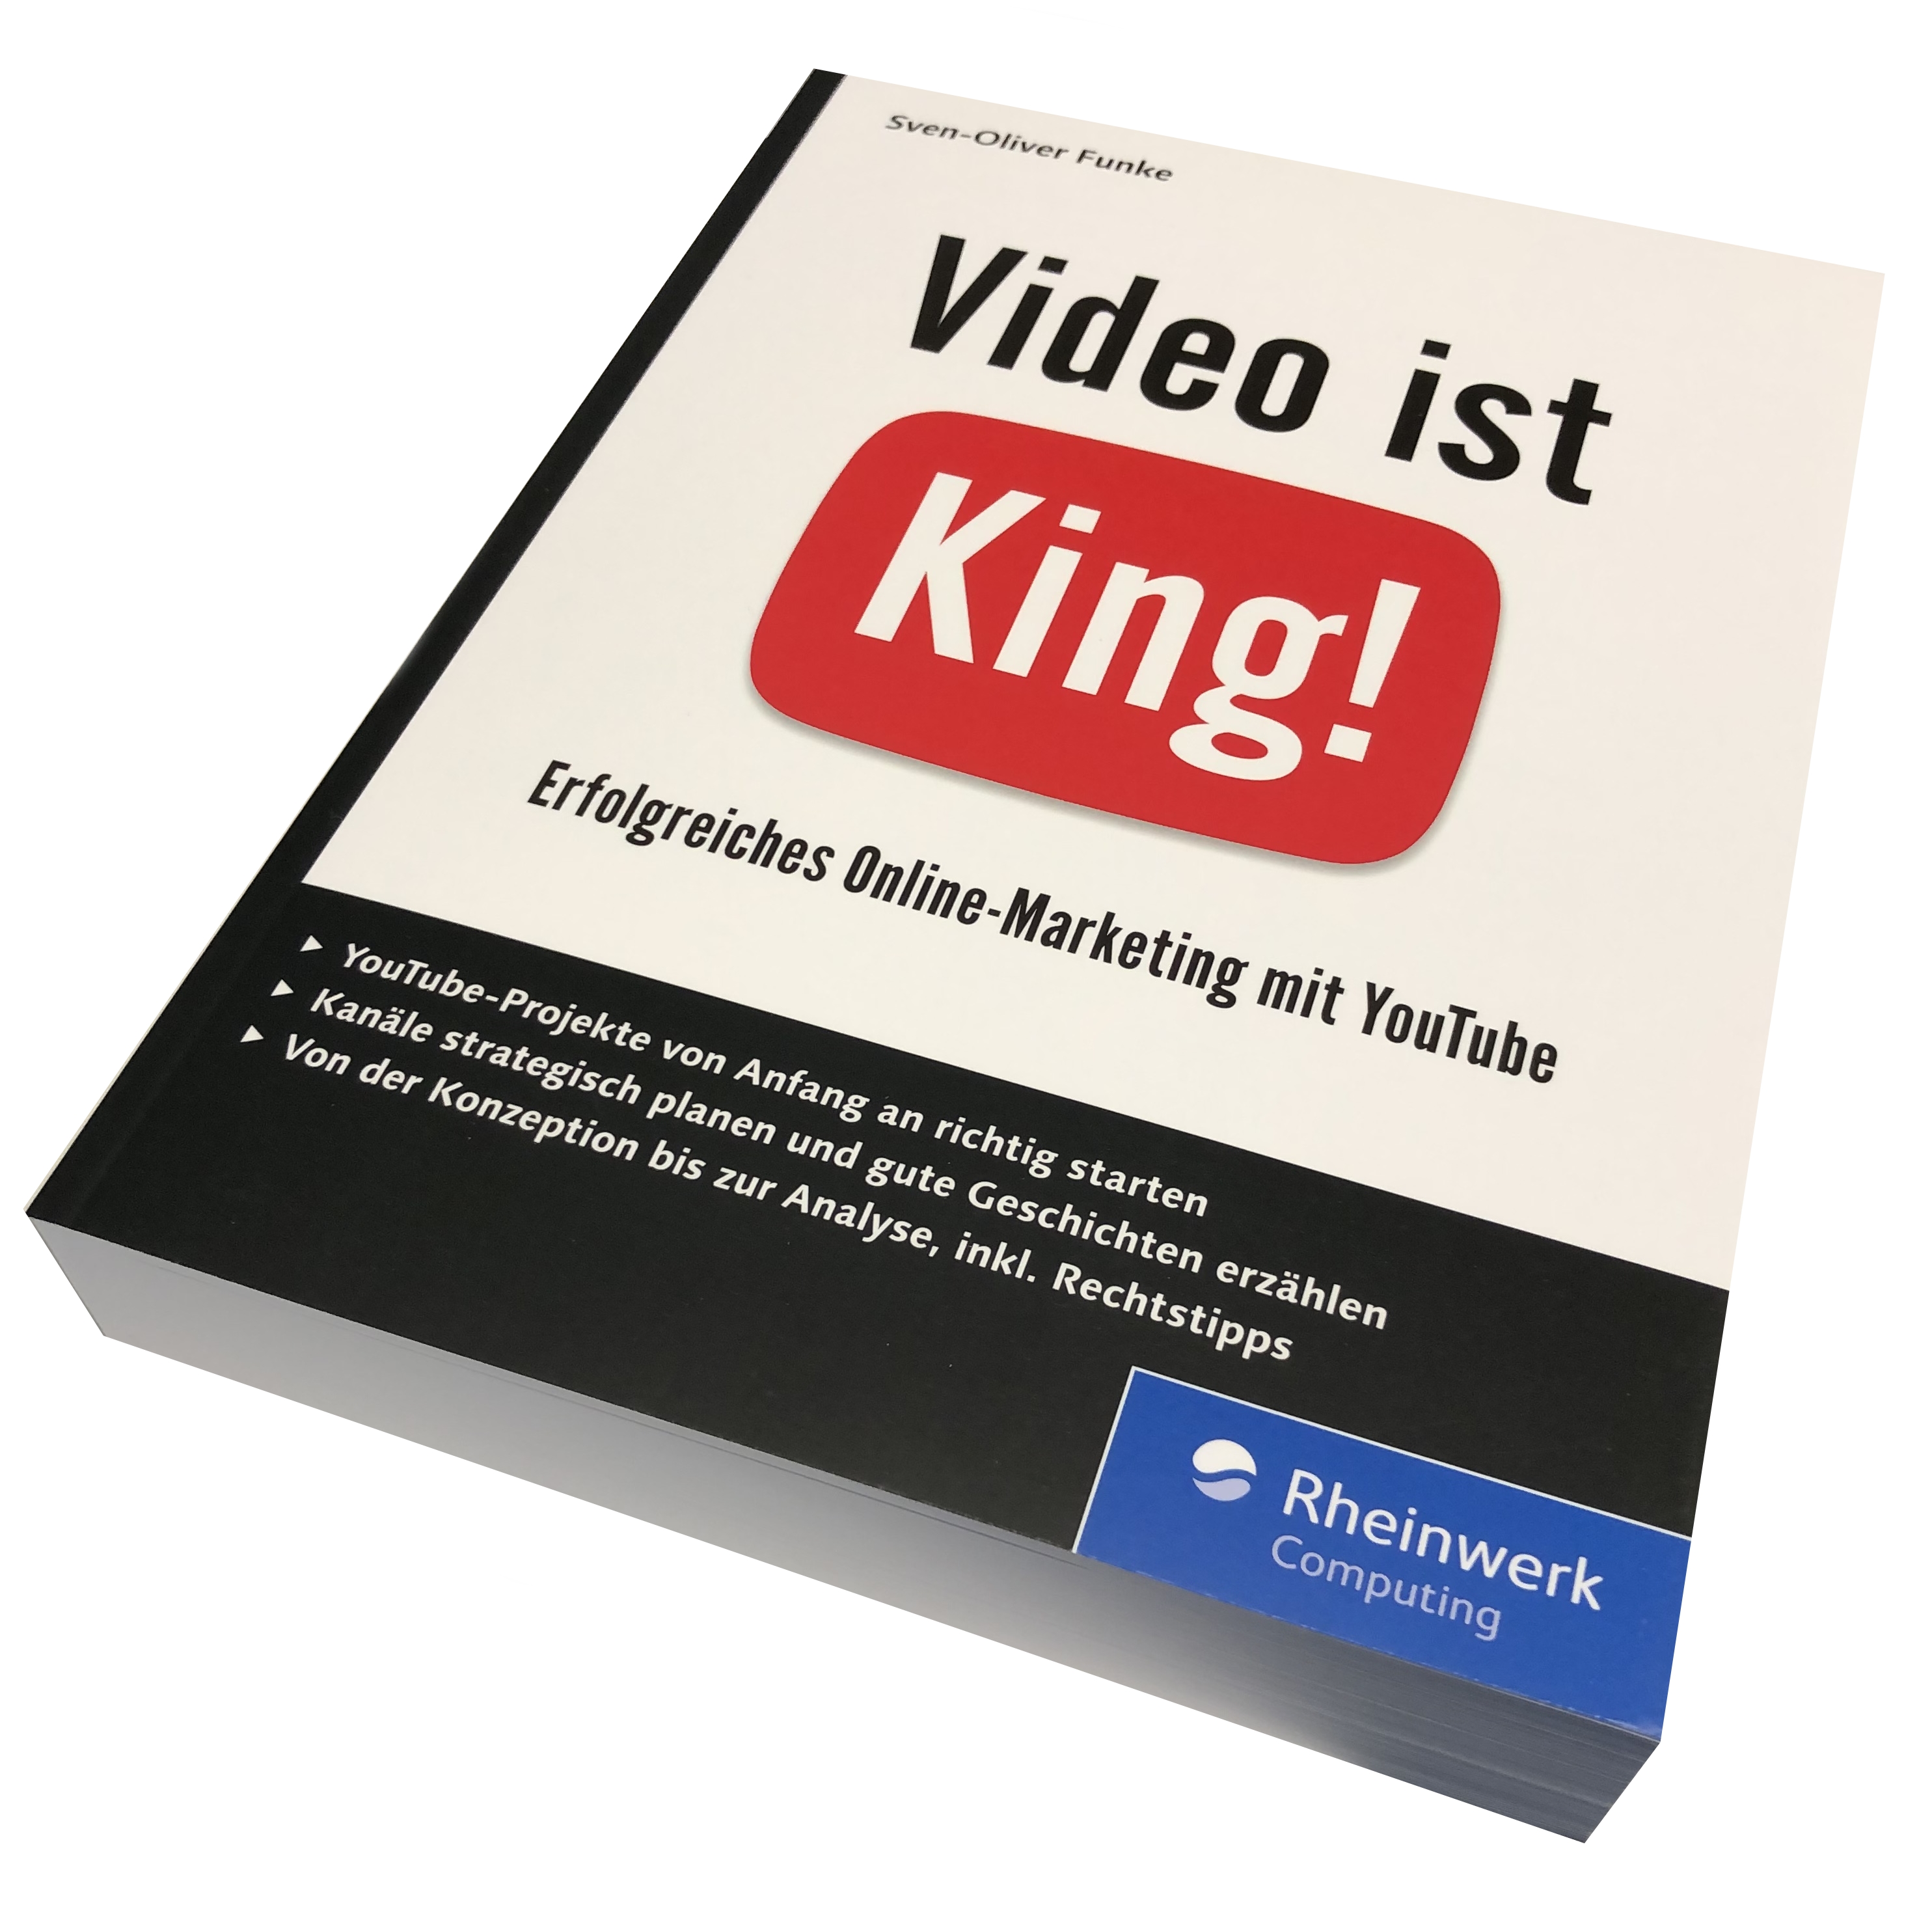 Video ist King - Erfolgreiches Online-Marketing mit Youtube